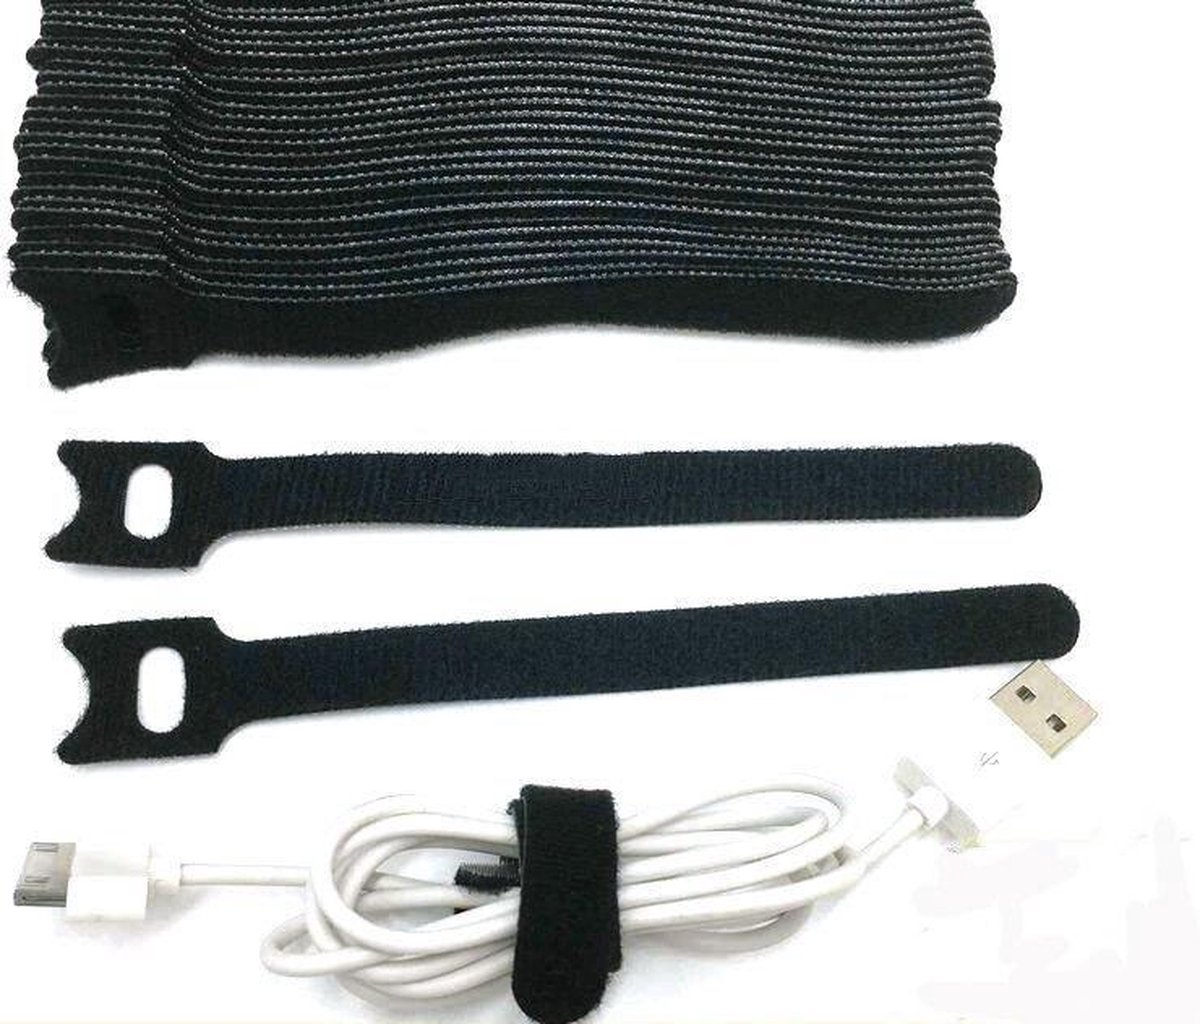 Klittenband kabelbinder-TY RAP-tie rap -20 stuks zwart-12x240 mm-bundelbandje-bindbandje- trekbandje- snelbinder,